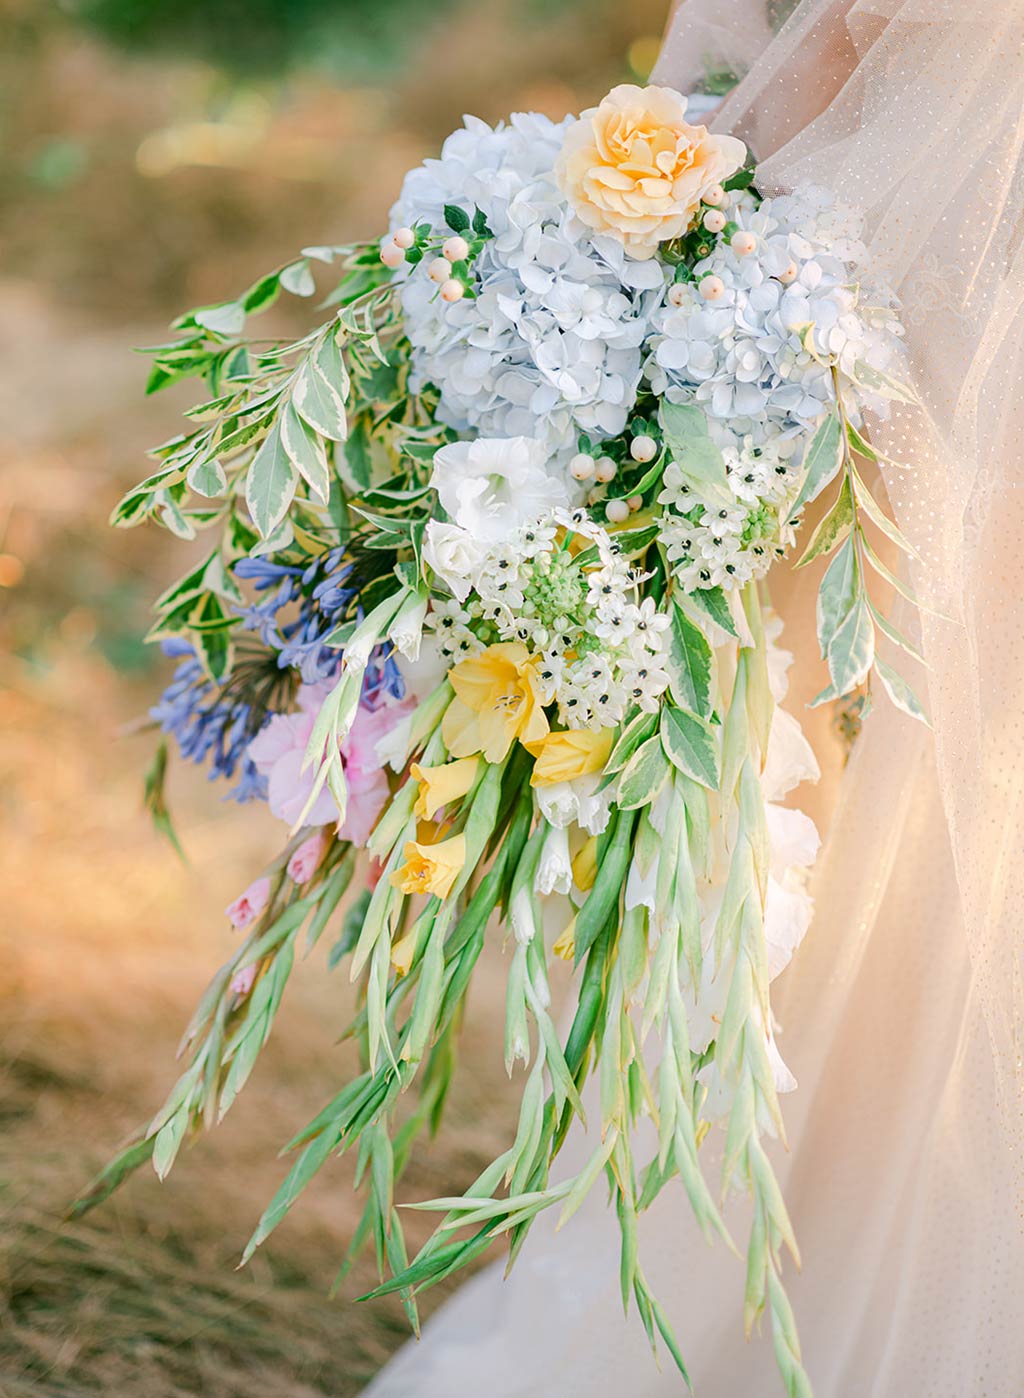 Colorful Wedding Boquet Arrangement